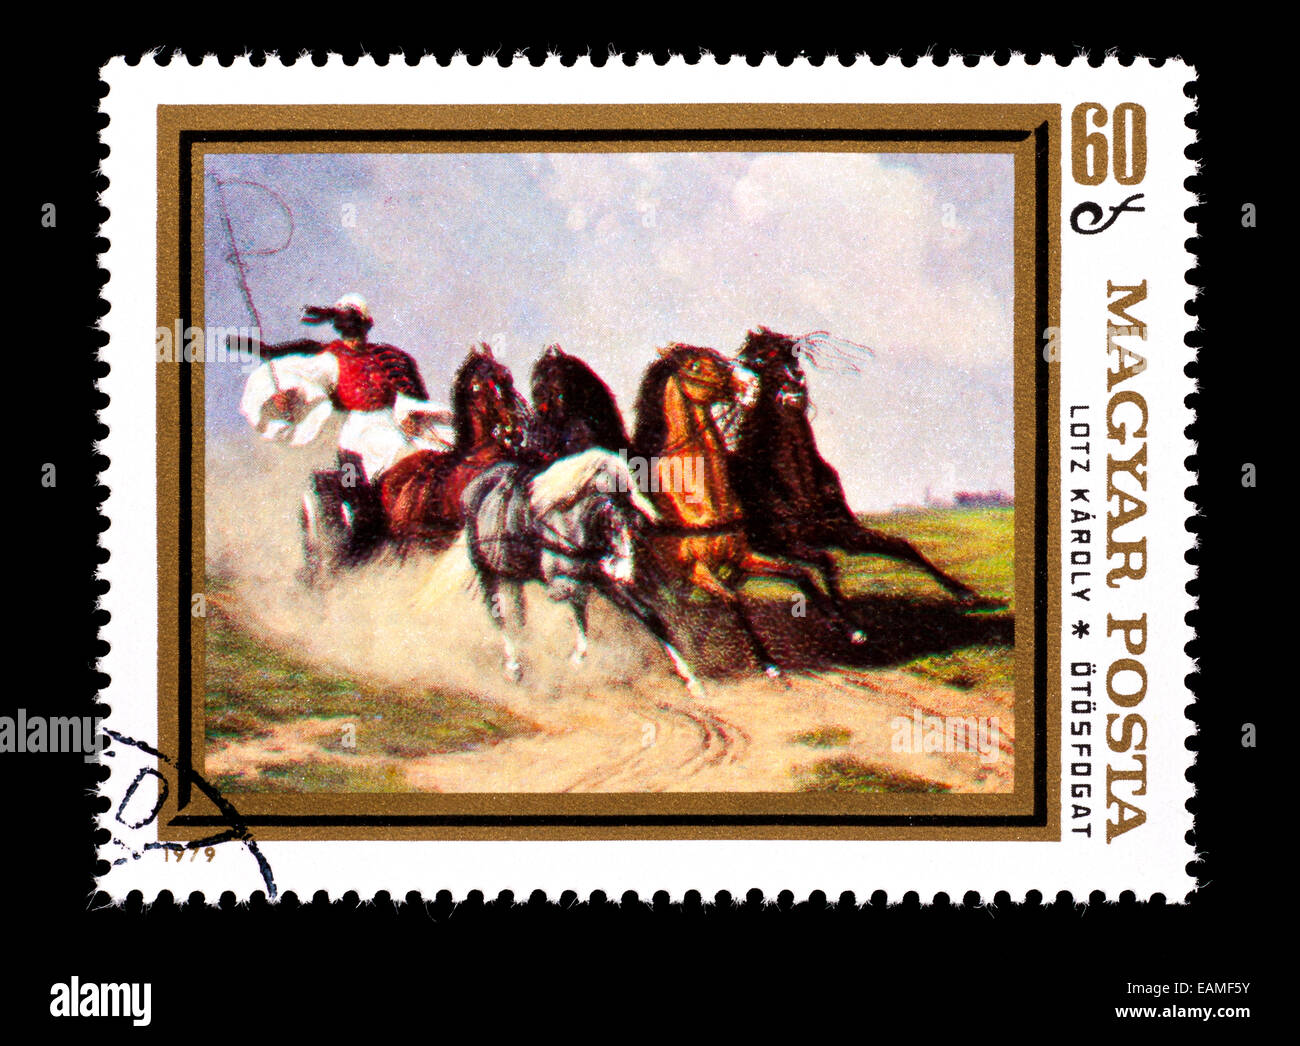 Briefmarke aus Ungarn, die Darstellung der Károly Lotz Malerei "Trainer und fünf" Stockfoto